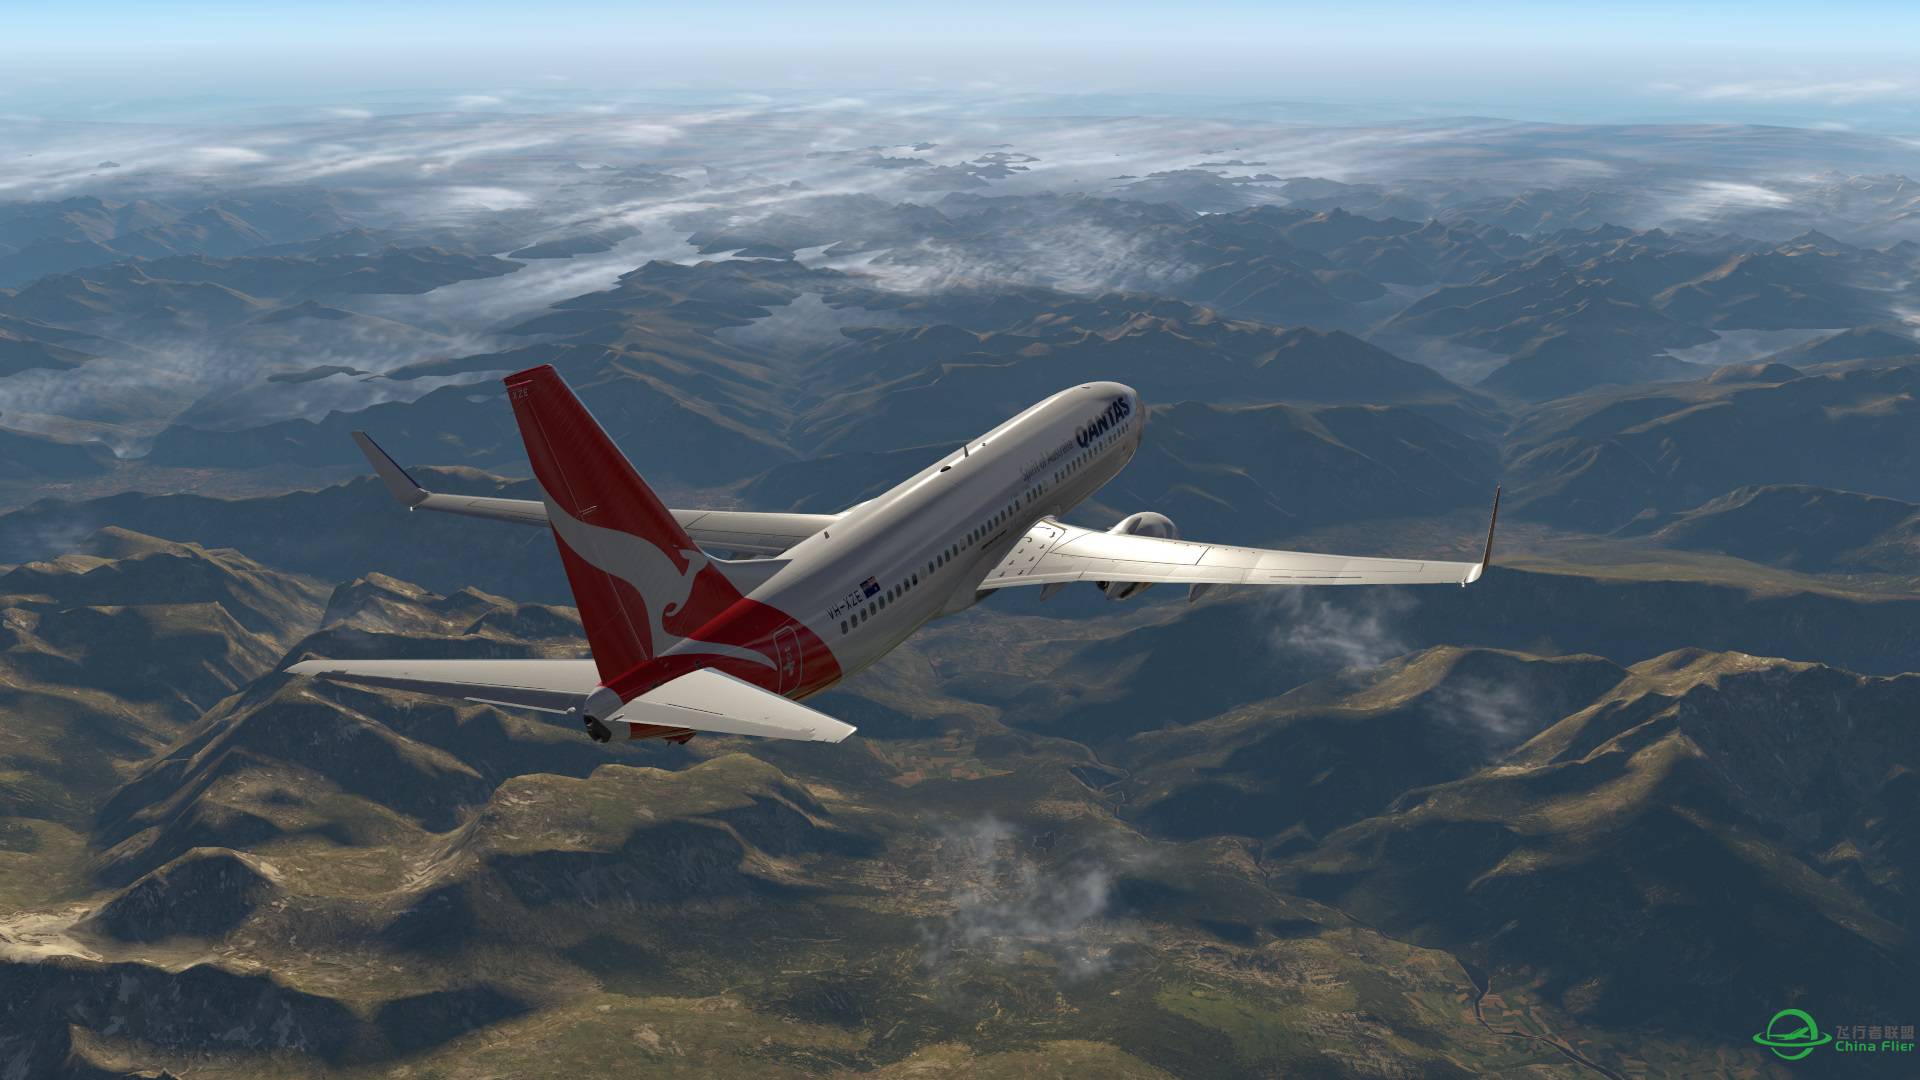 飞跃阿尔卑斯山 X-plane 11-6179 